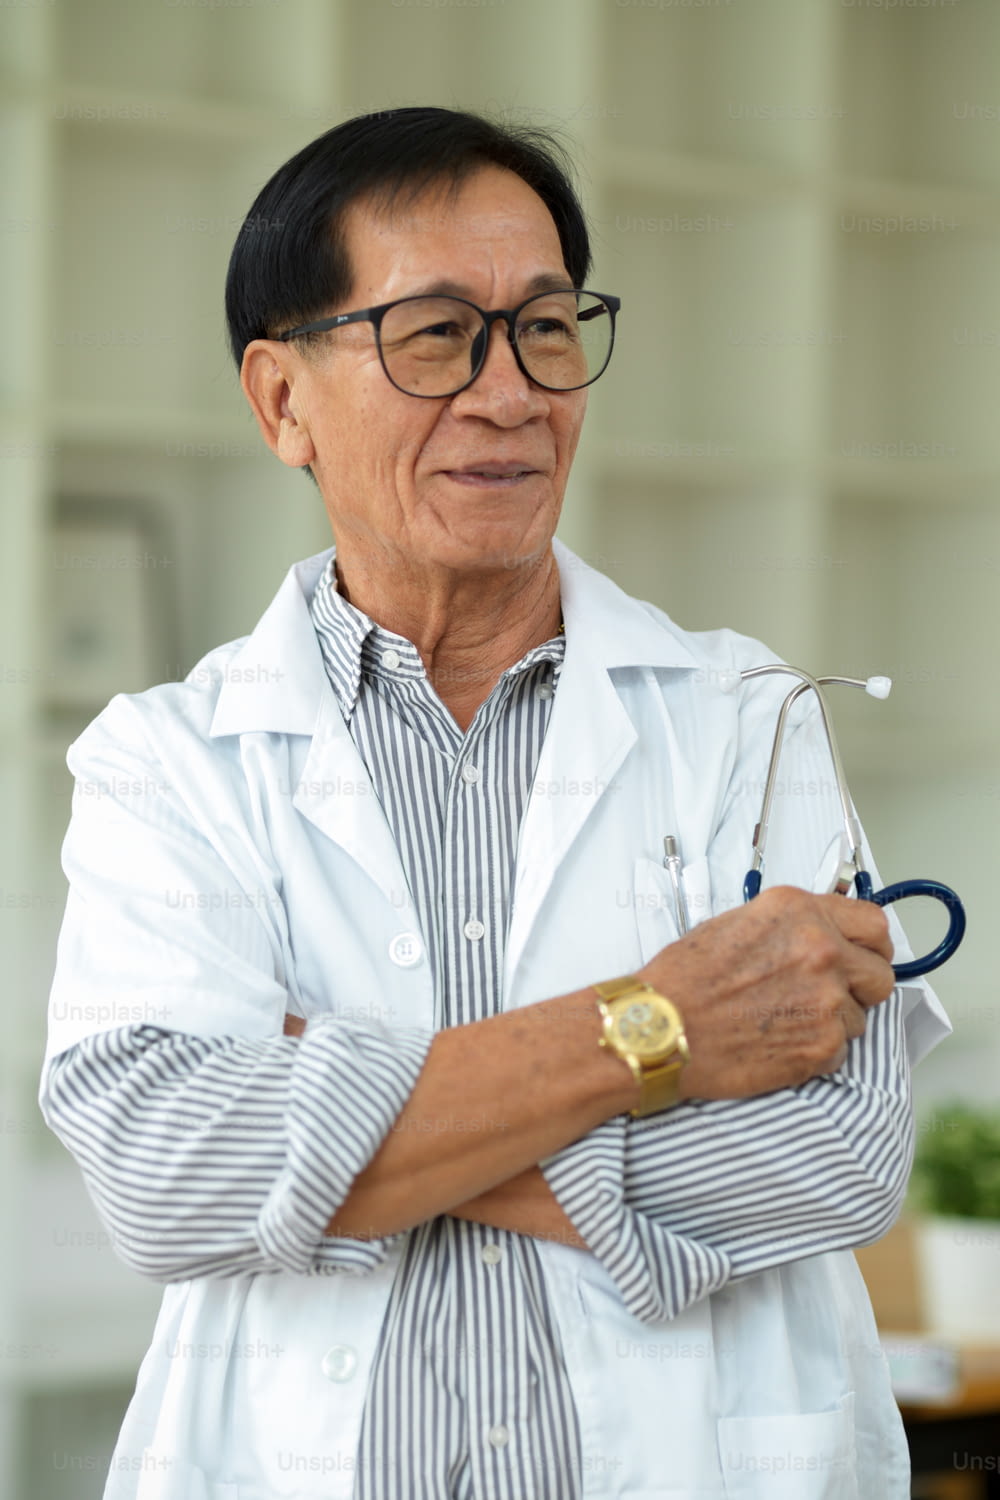 Un thérapeute asiatique d’âge moyen avec des lunettes et une blouse blanche se tient debout, les bras croisés, dans sa clinique.